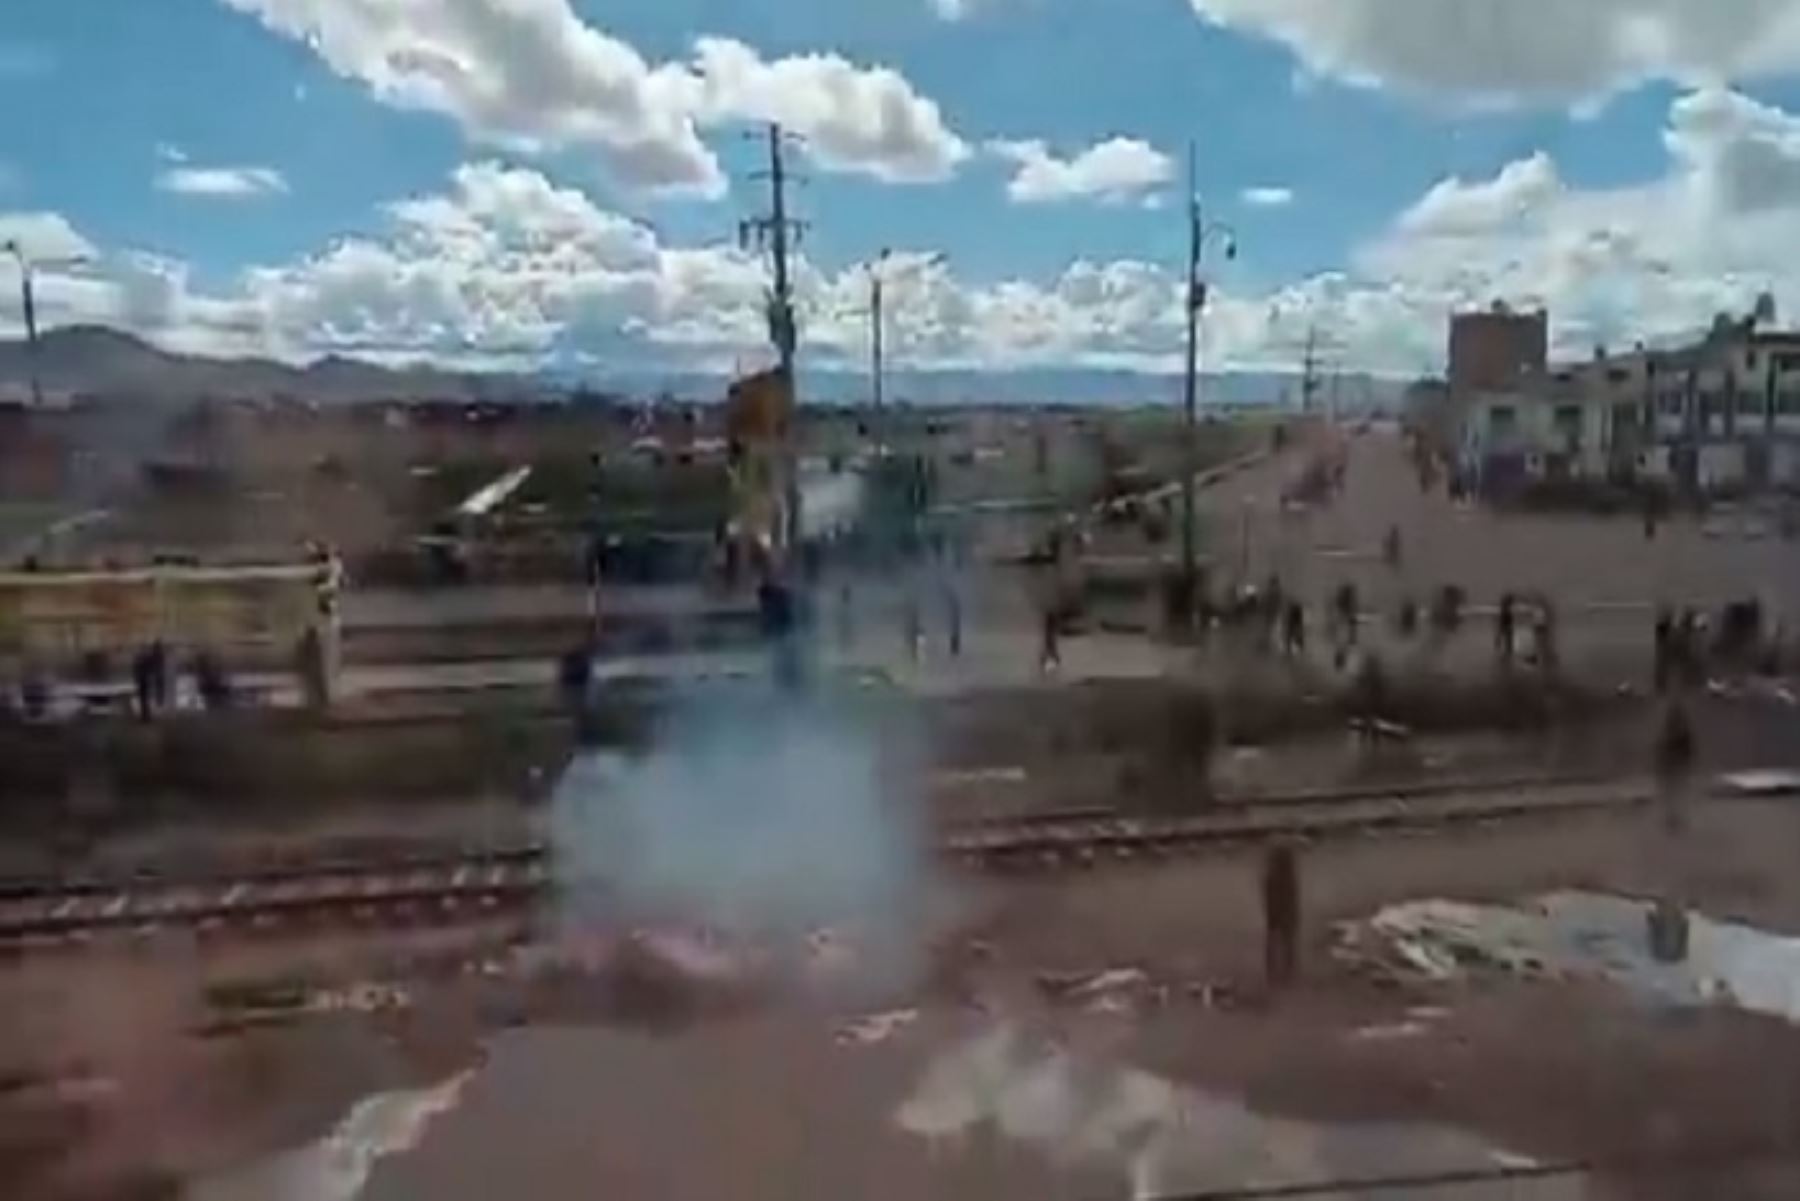 Los manifestantes mantienen bloqueadas las carreteras Juliaca- Arequipa, Juliaca -Cusco, carretera Interoceánica Juliaca -Puerto Maldonado y Puno- Desaguadero.